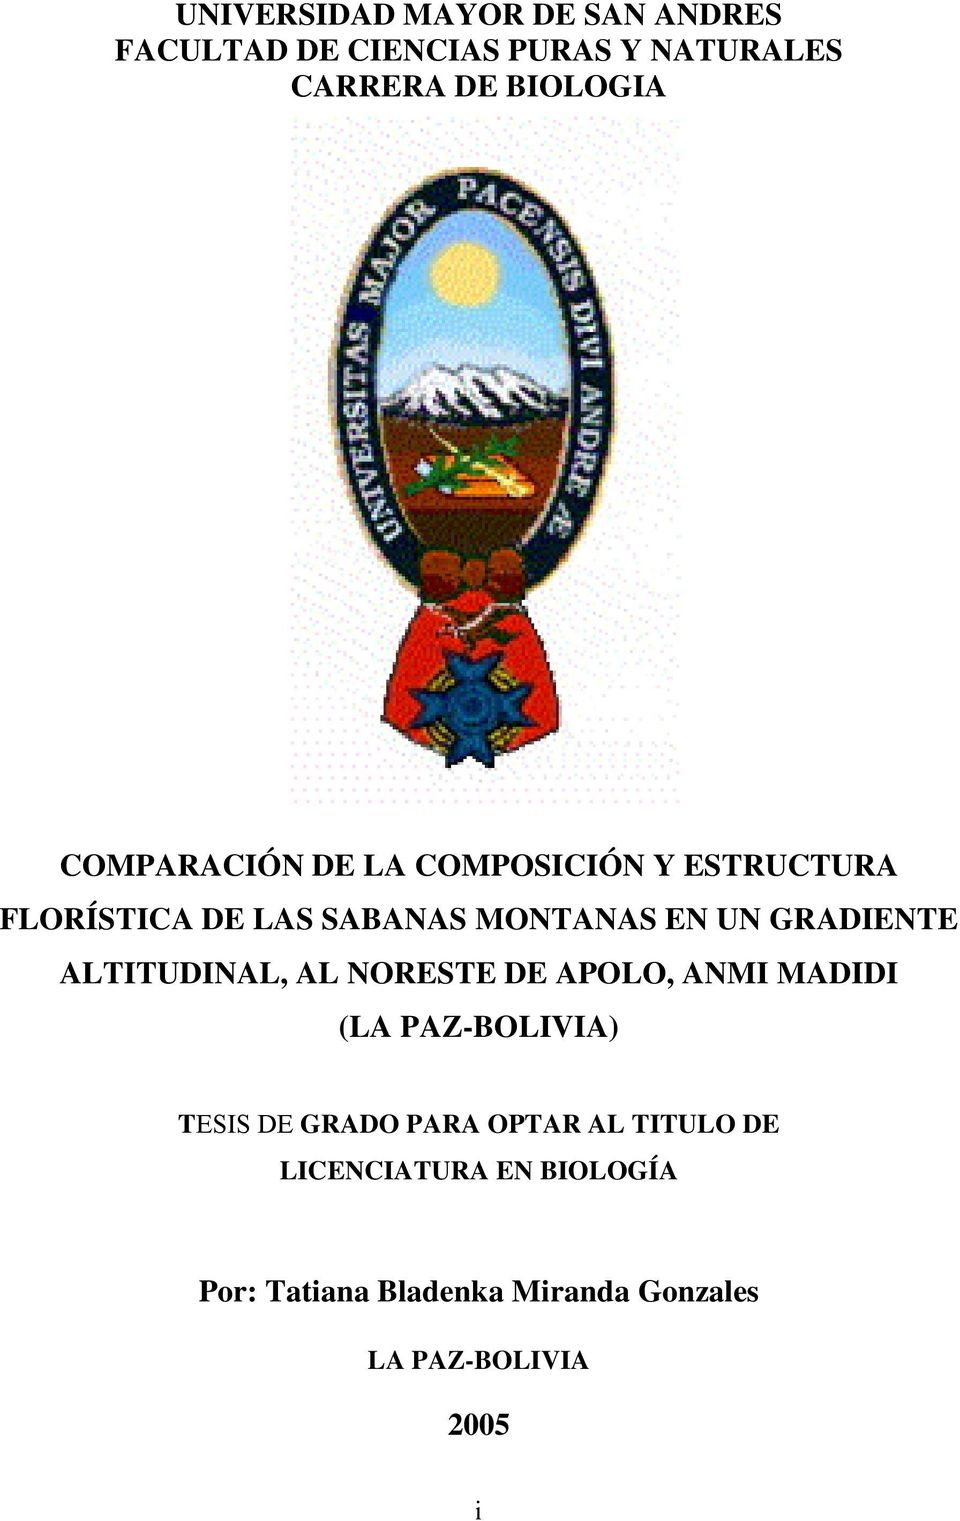 GRADIENTE ALTITUDINAL, AL NORESTE DE APOLO, ANMI MADIDI (LA PAZ-BOLIVIA) TESIS DE GRADO PARA